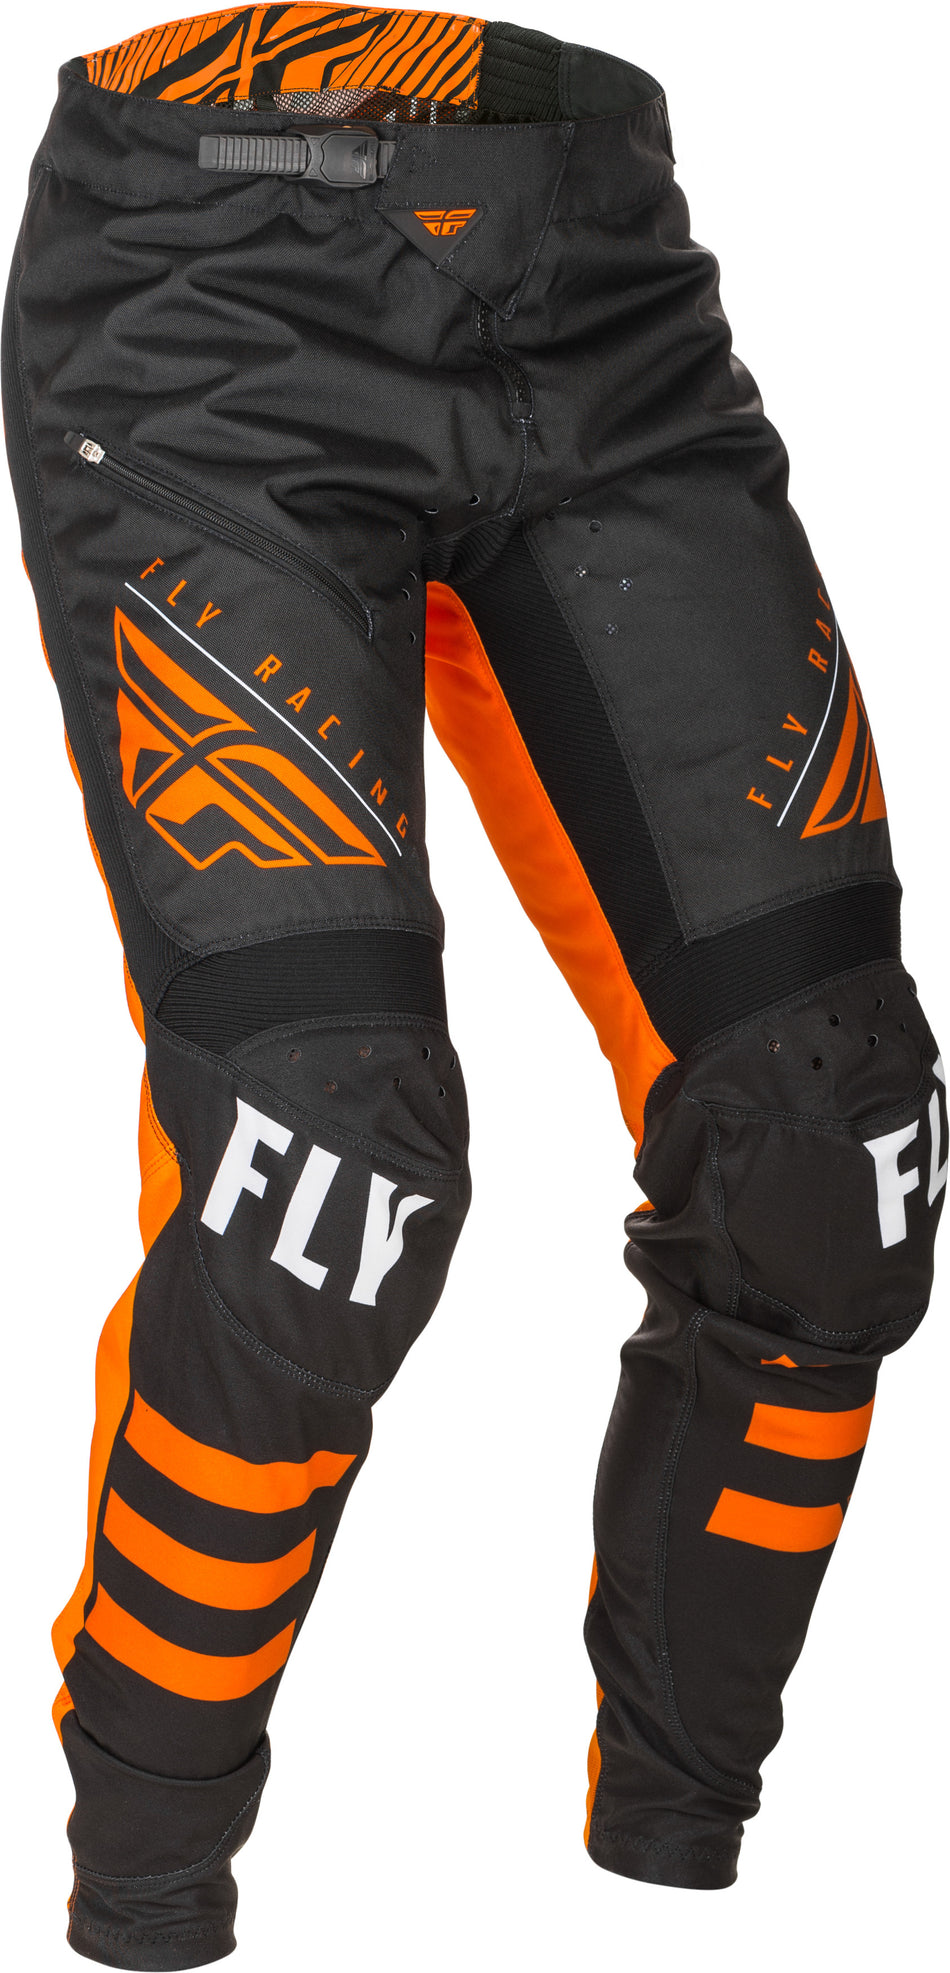 FLY RACING Kinetic Bicycle Pants Black/Orange Sz 22 373-04722